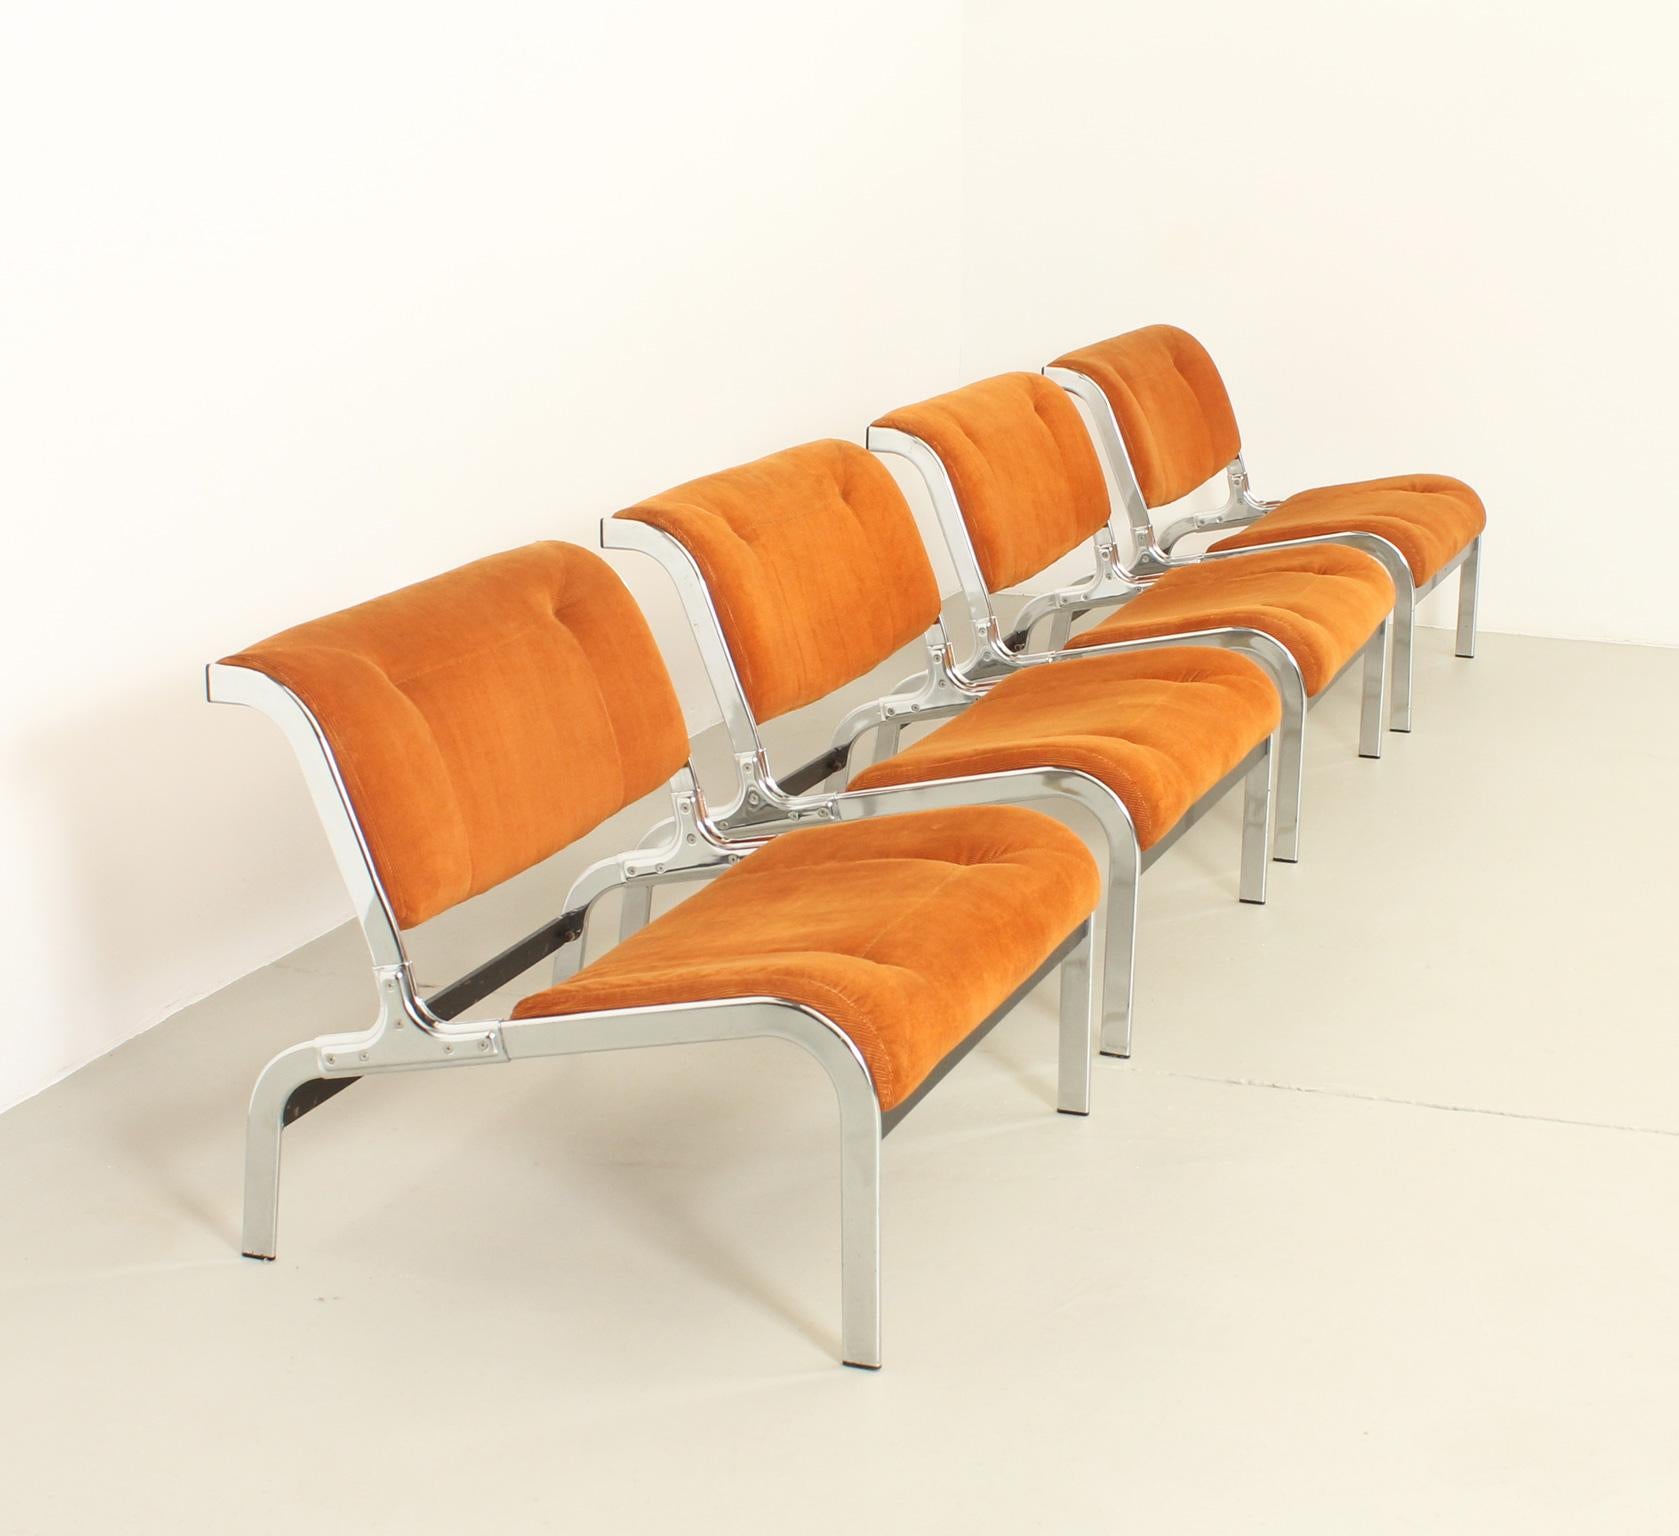 Whist Lounge Chairs, entworfen 1964 von Olivier Mourgue für Airborne, Frankreich. Verchromtes und lackiertes Stahlgestell und Original-Kordpolsterung. 